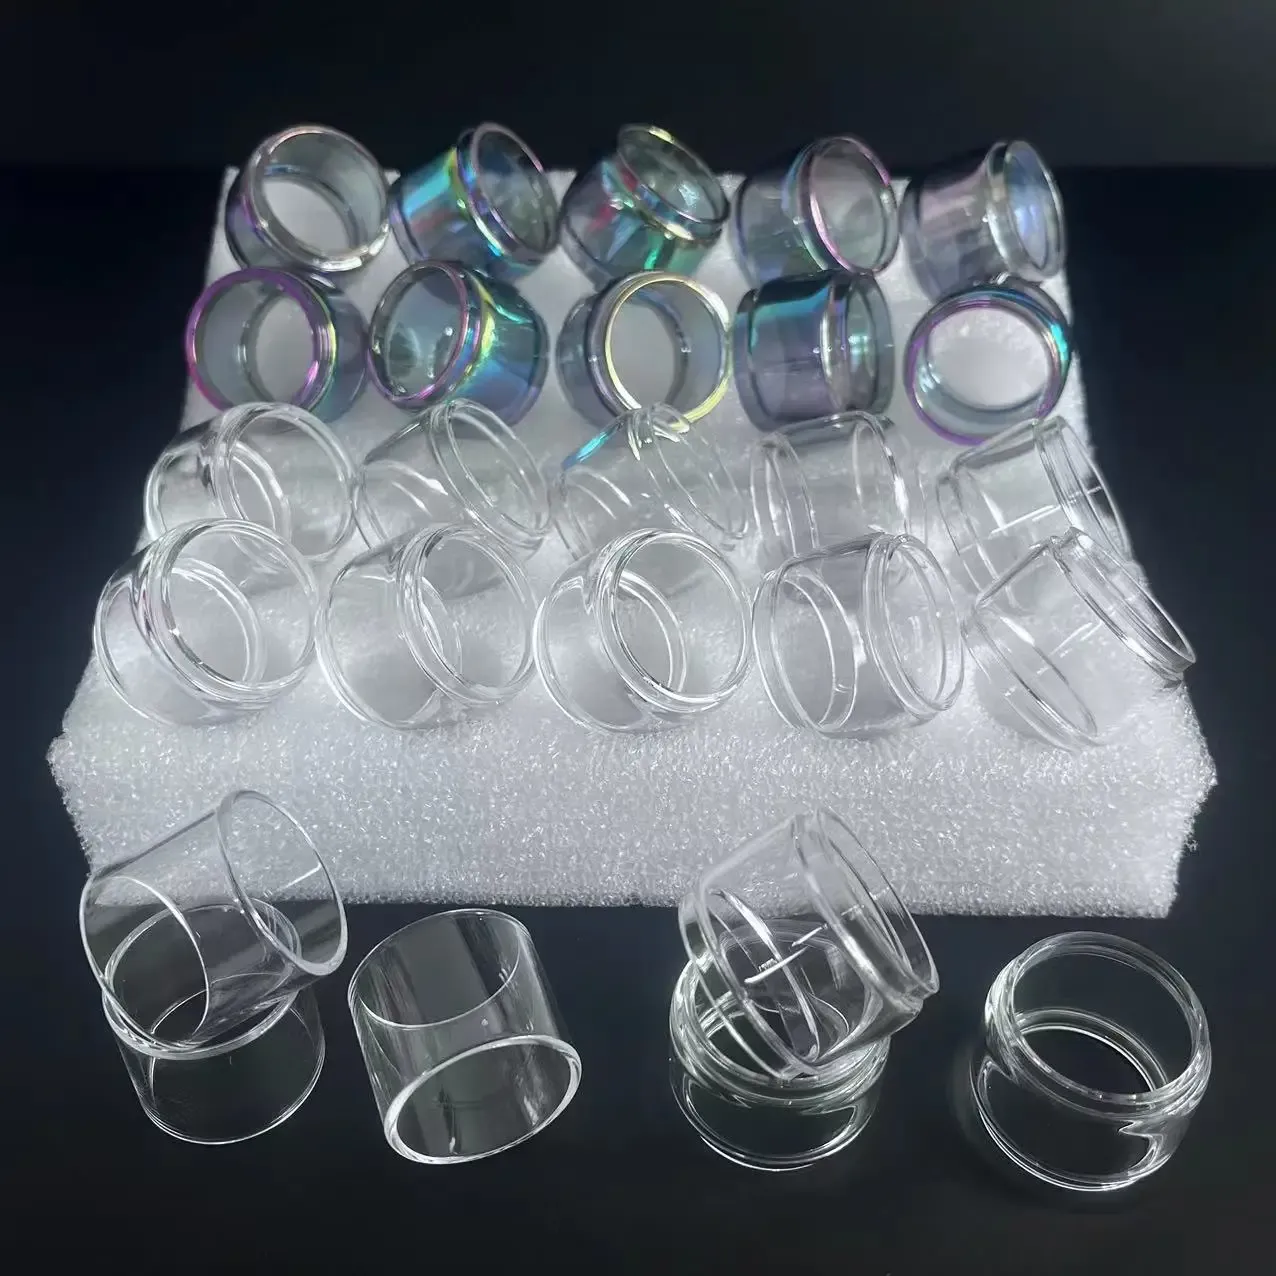 Cor 10pcs bolha vidro reto para zeus x malha / sub ohm / zeus duplo arco -íris tubos de bolha de vidro de vidro de vidro